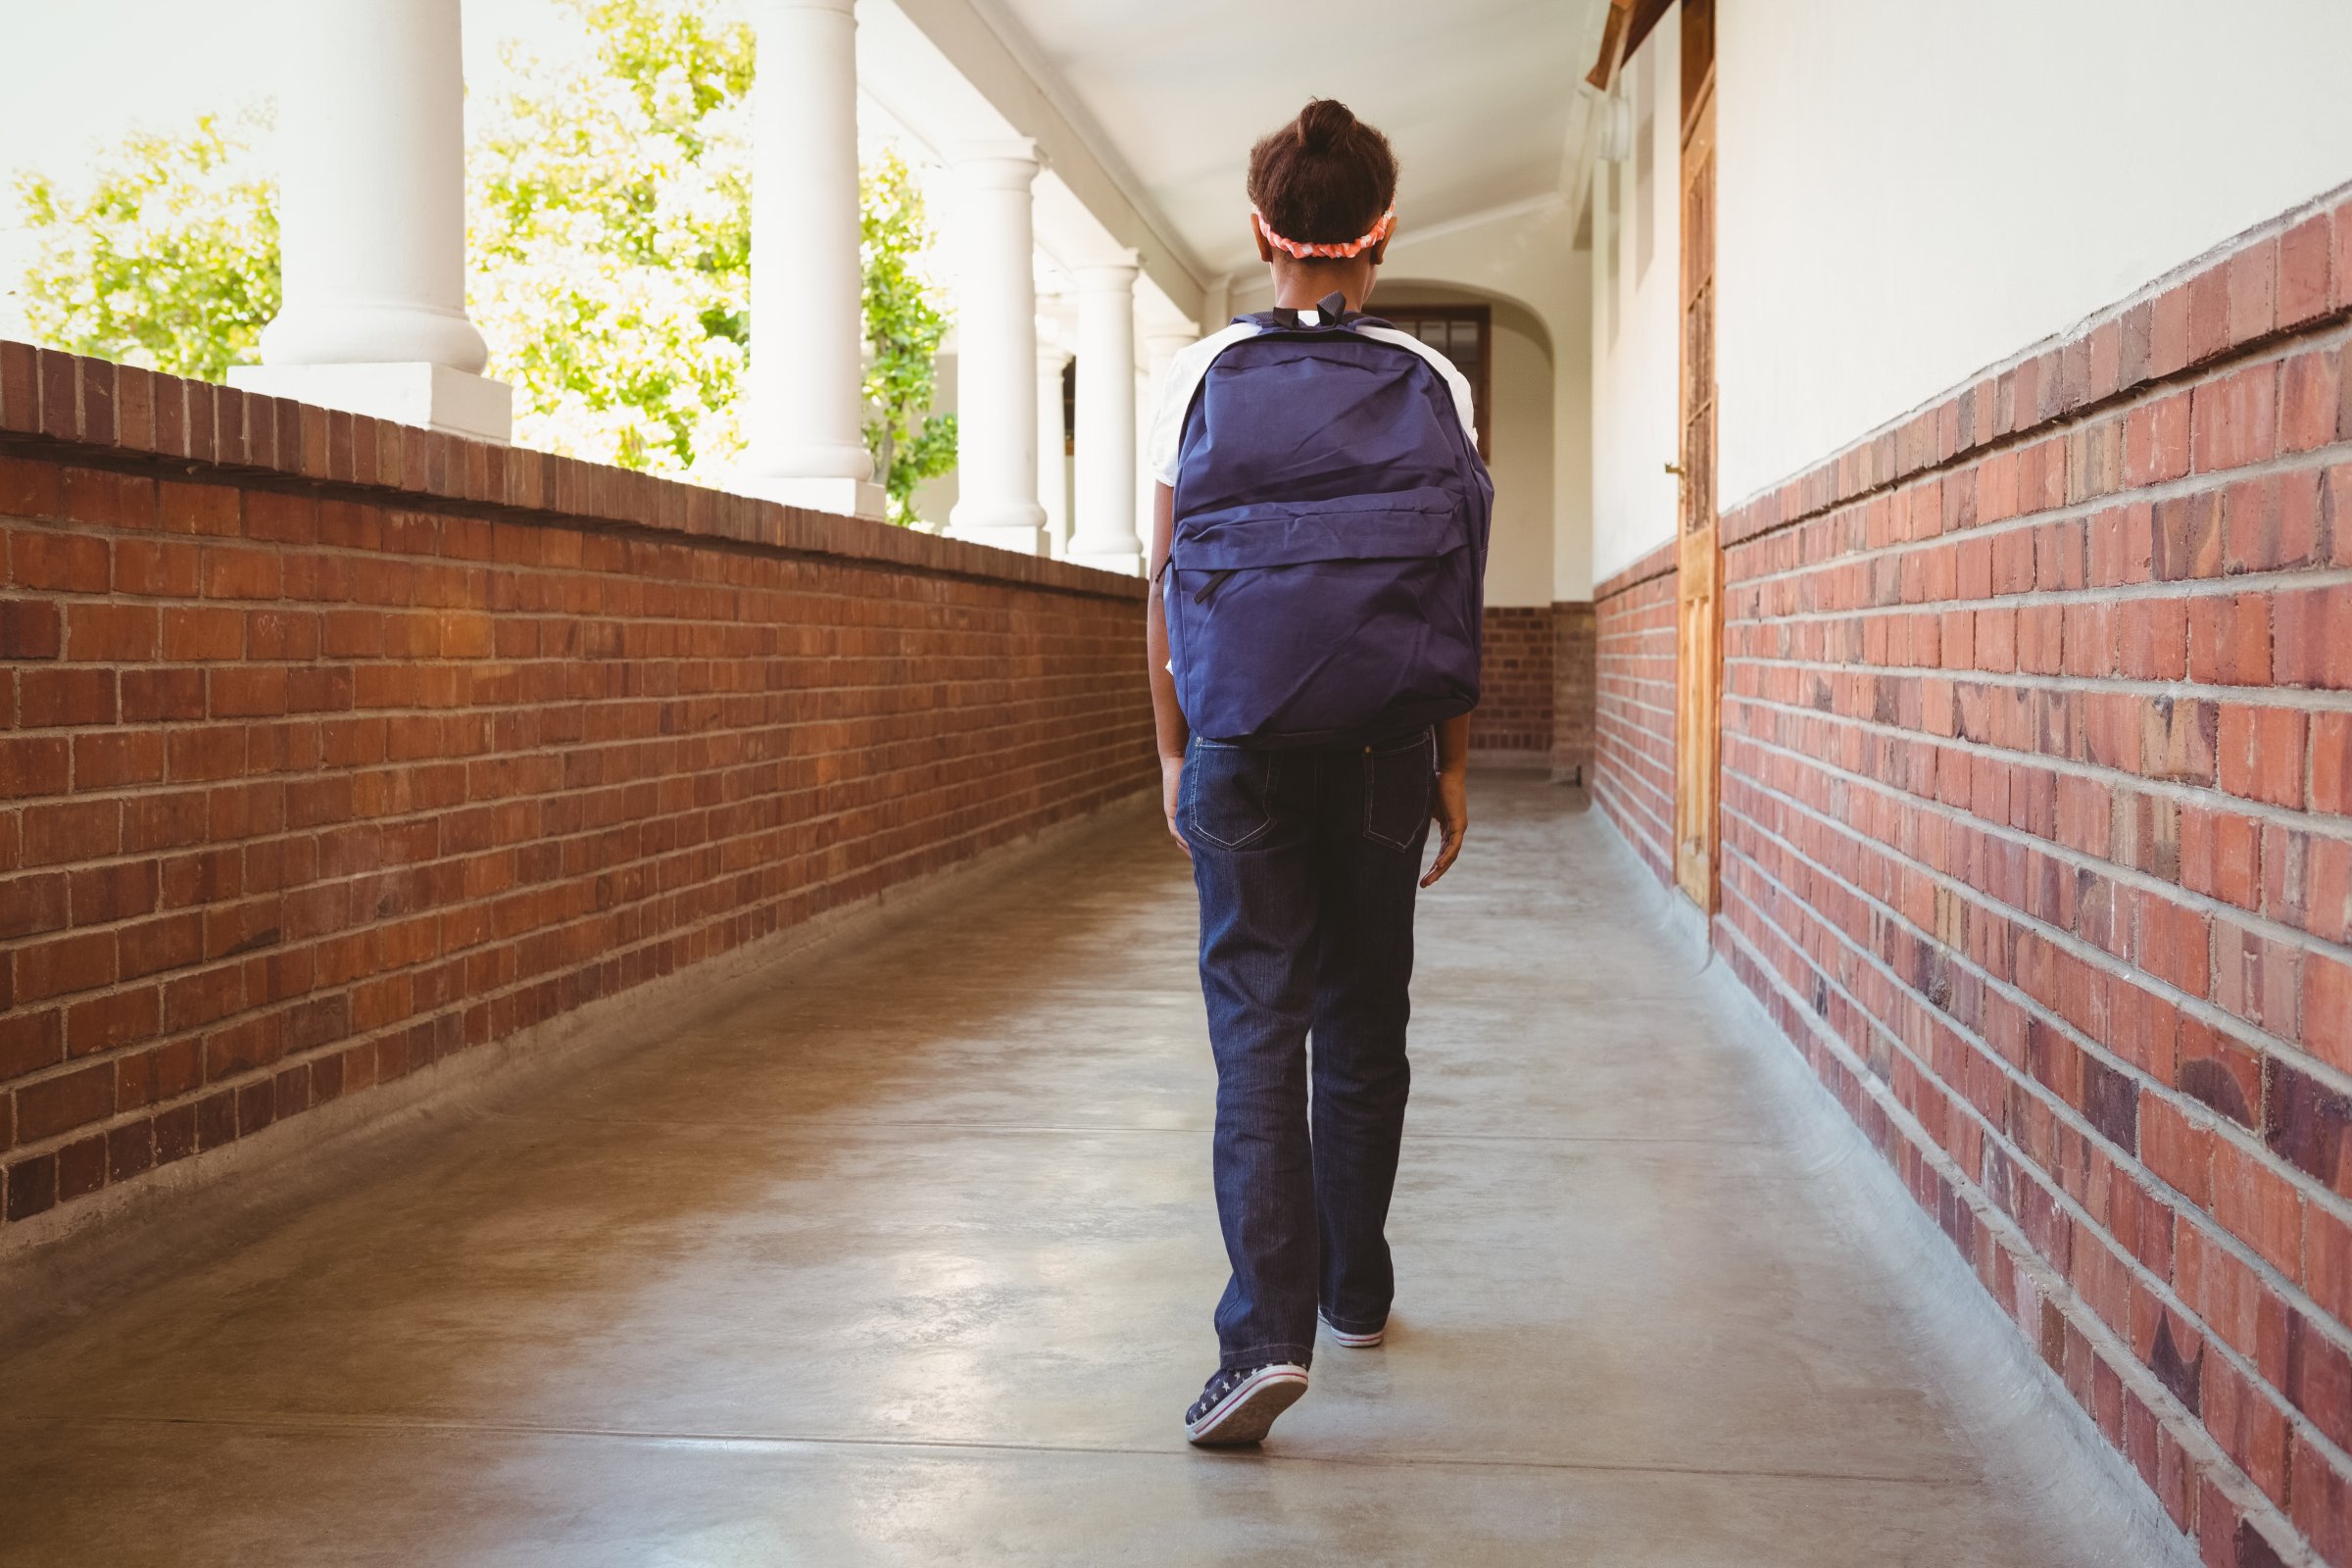 Girl walking in school corridor